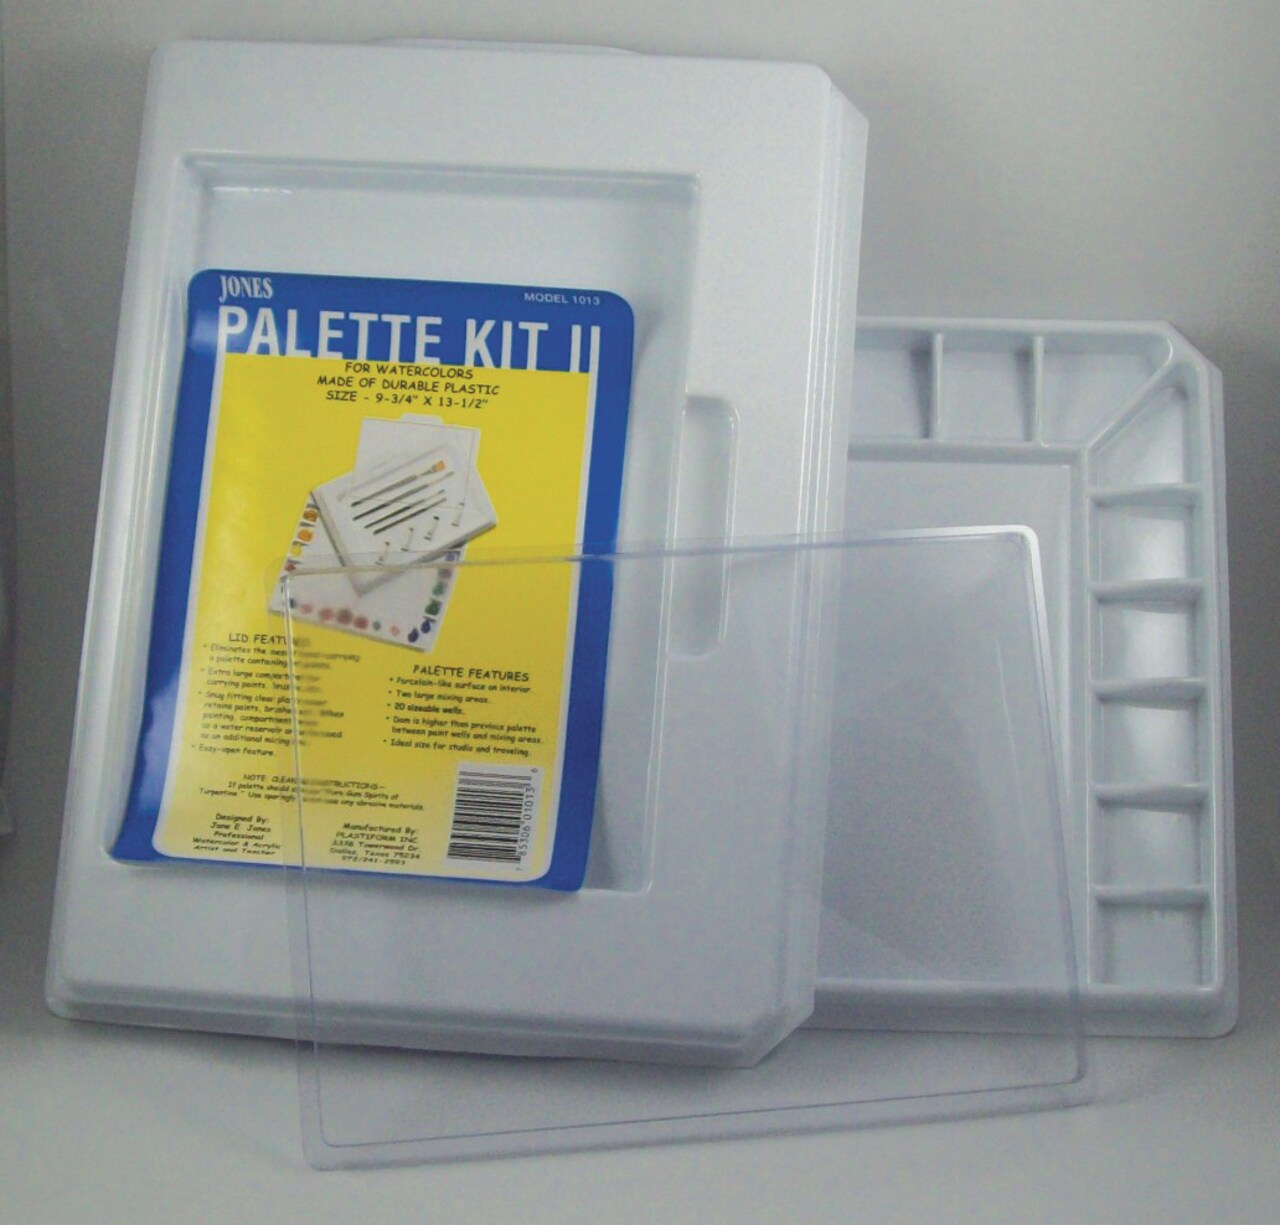 Palette Master Jones Palette Kit II